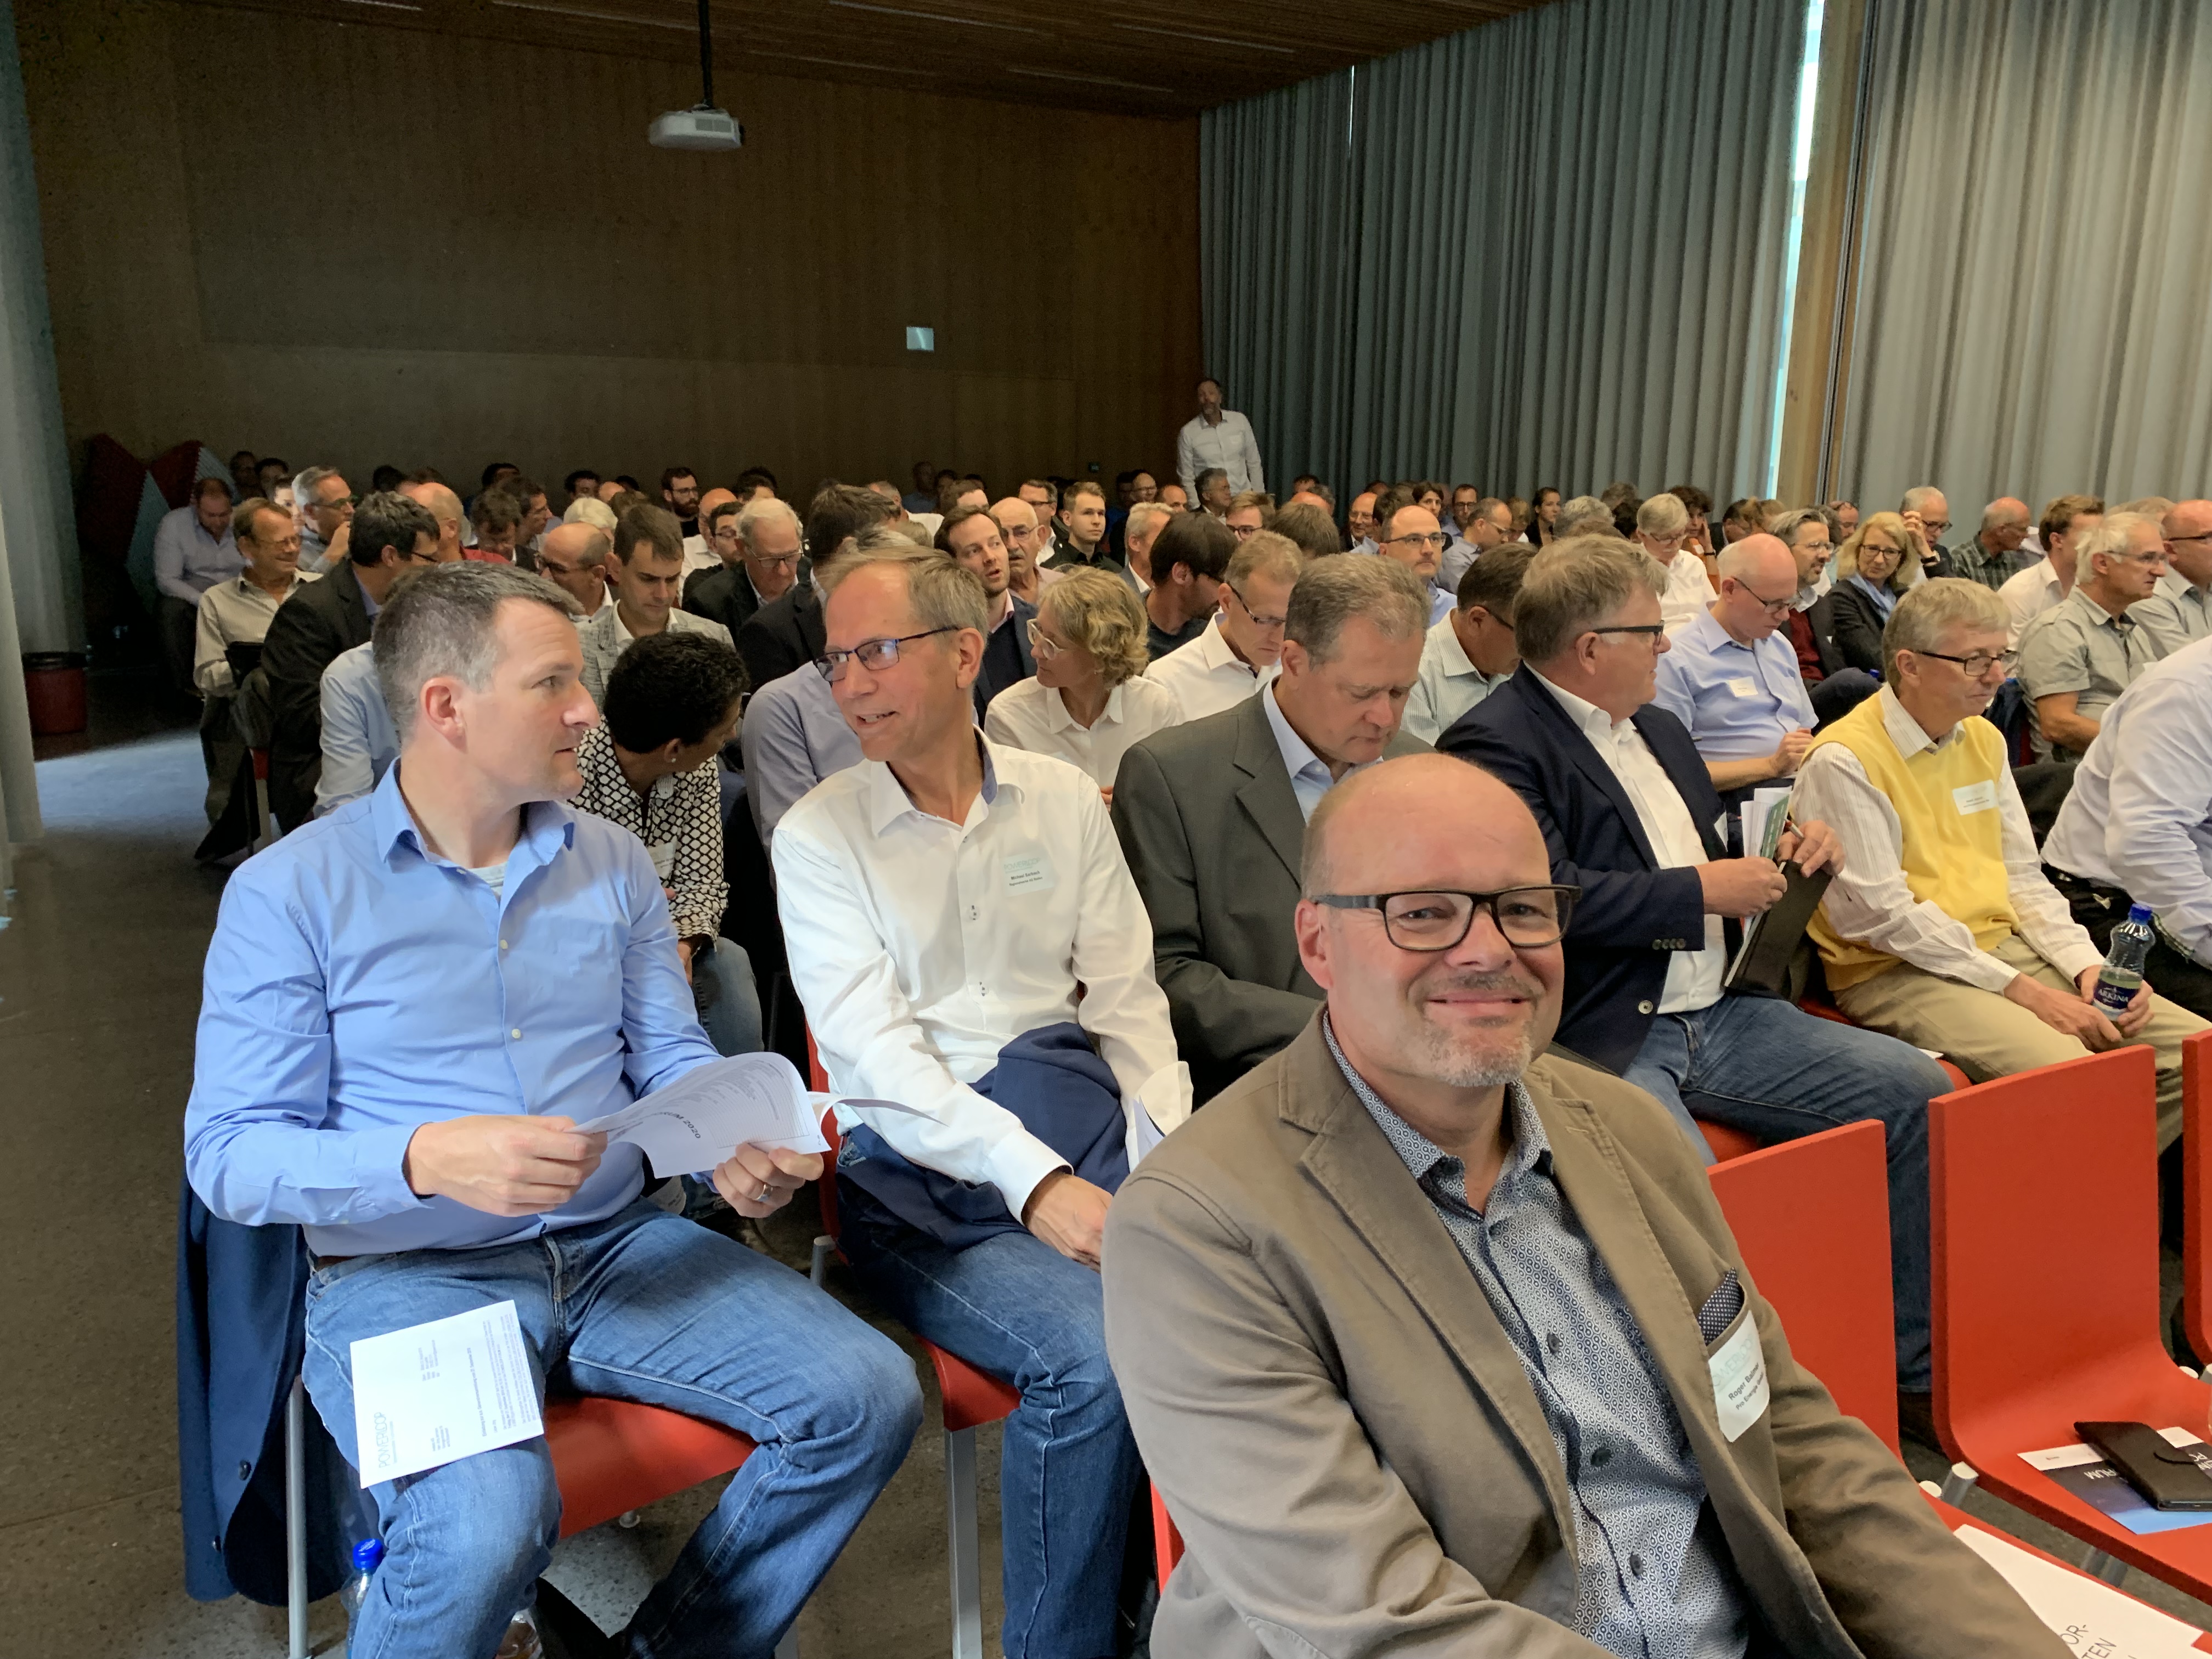 Mehr als 160 interessierte Zuhörer - darunter auch Jörg Jermann / Vorstand, Michael Sarbach (CEO RWB) und Roger Balmer / Referent